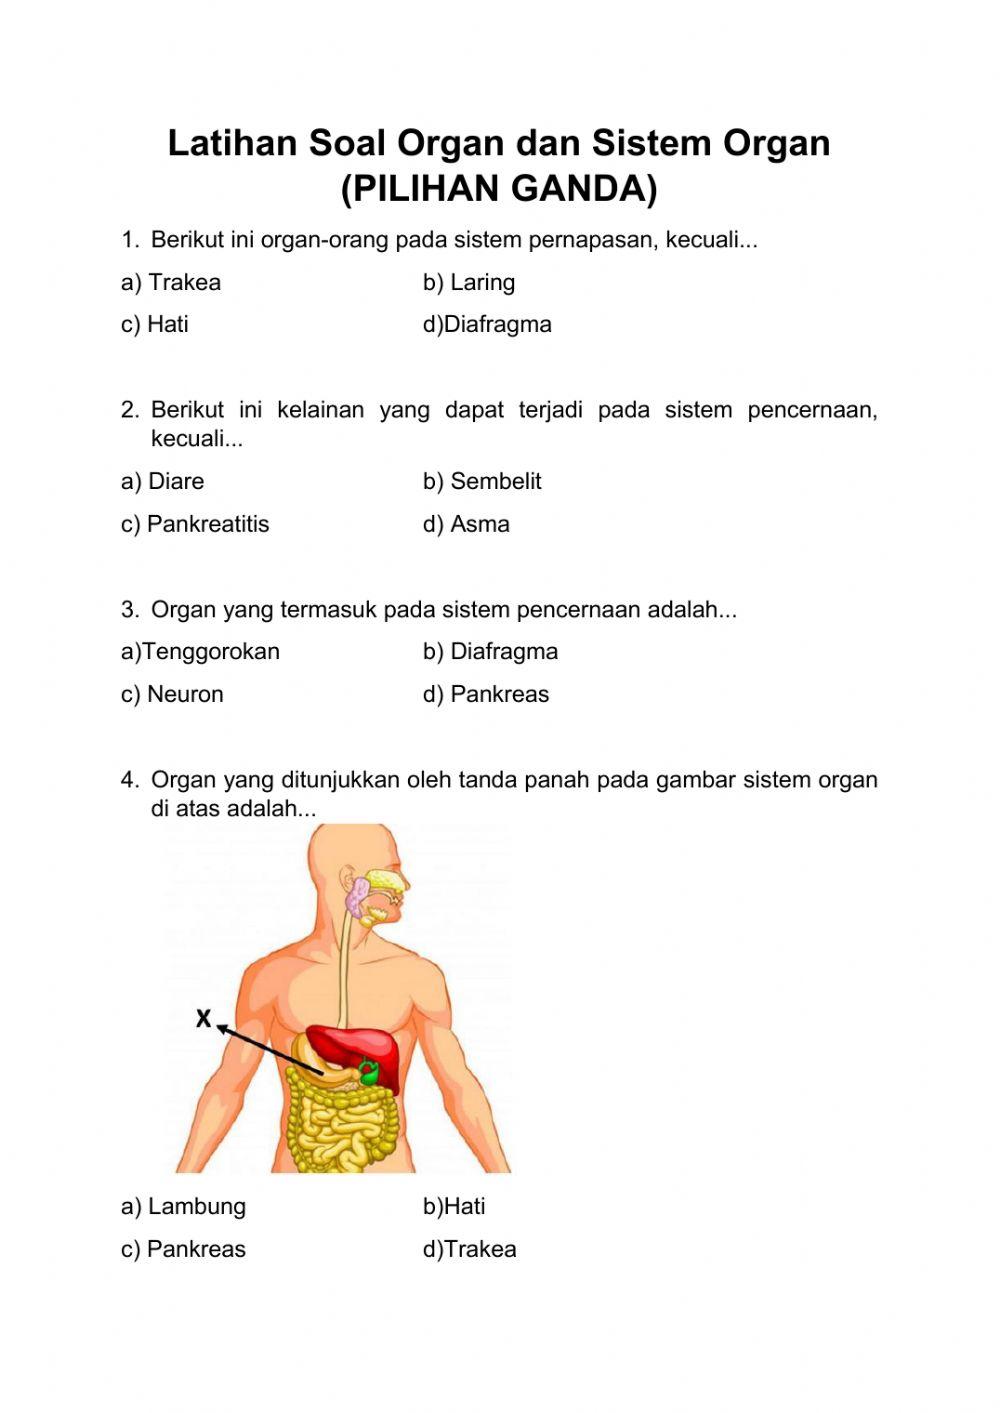 Latihan 4 soal PG organ dan sistem organ